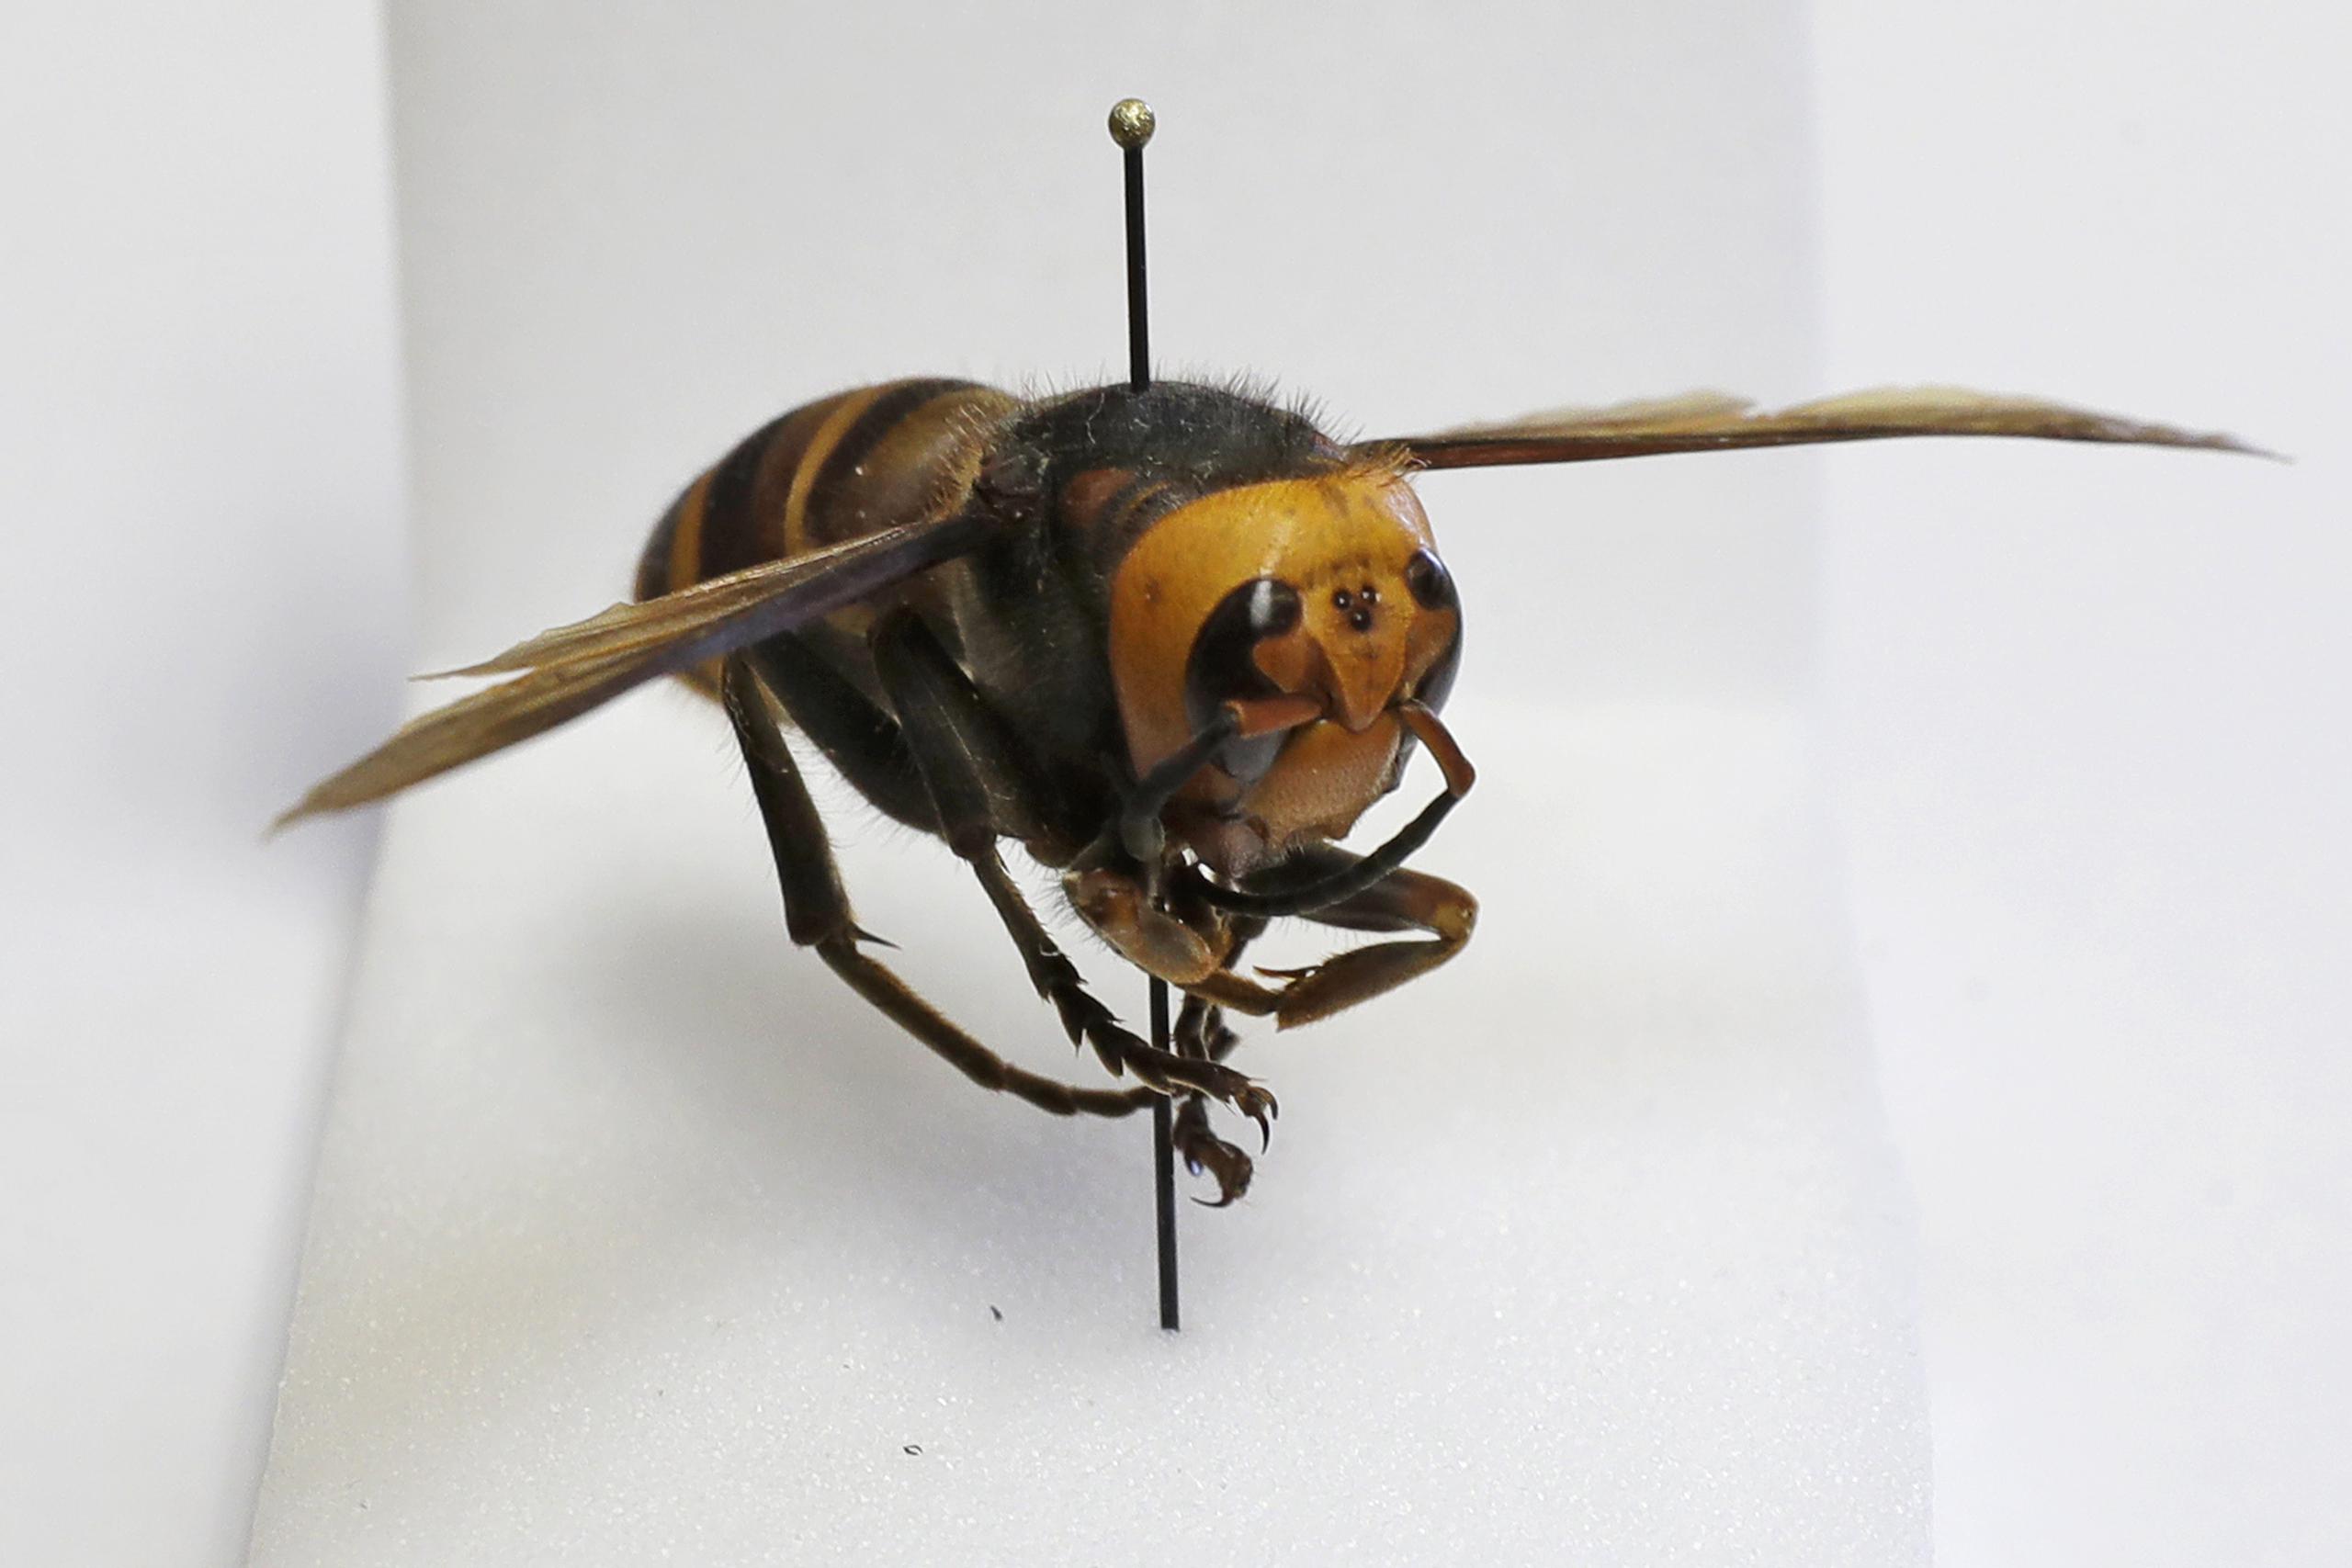 El insecto asiático gigante, con una picadura que podría ser mortal para algunas personas, apenas está empezando a salir de su hibernación invernal.